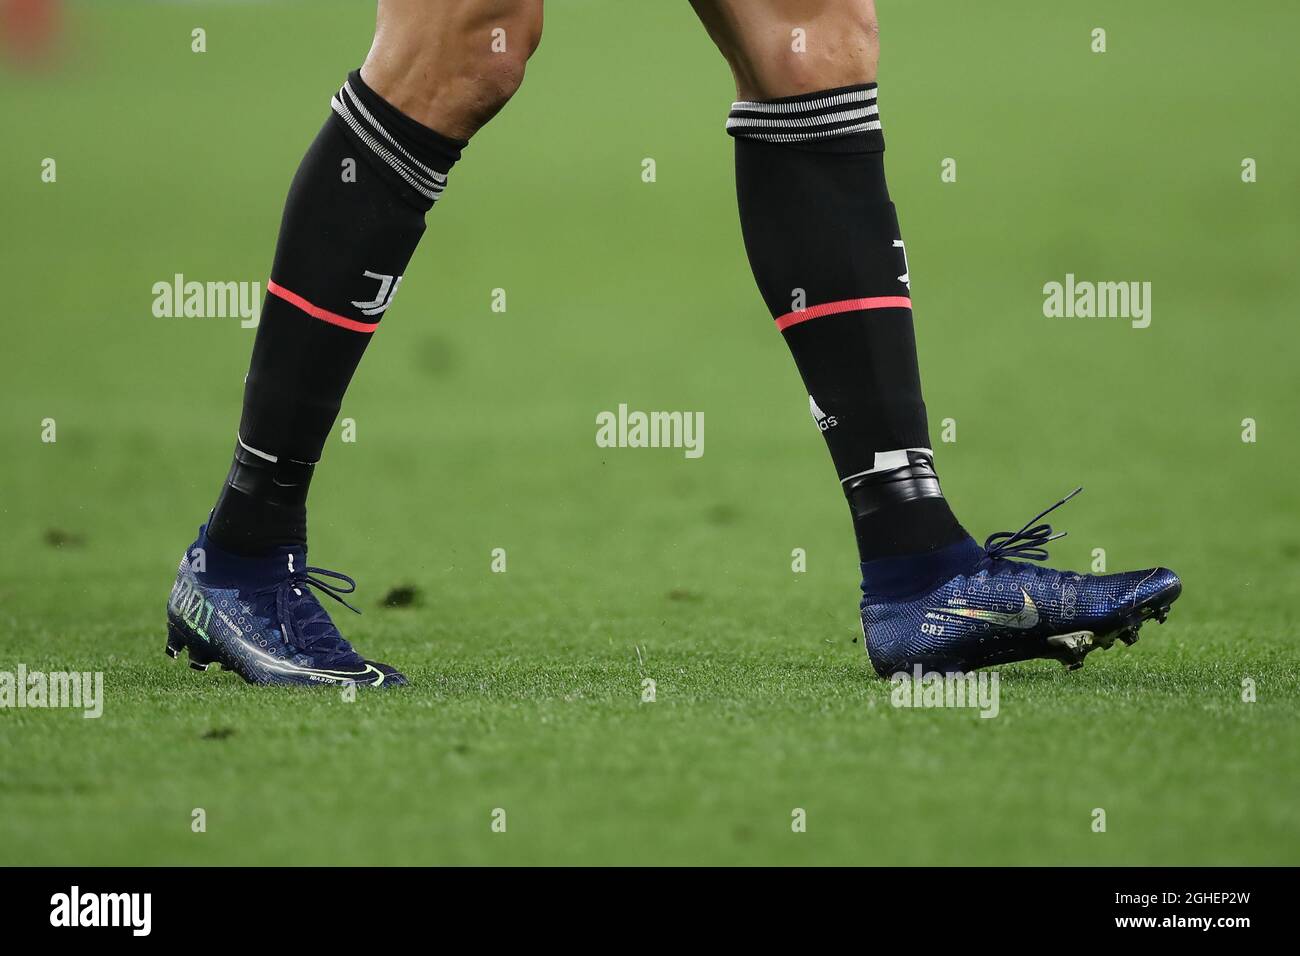 Cristiano Ronaldo de Juventus modela una nueva versión de botas de fútbol Mercurial durante el partido de la UEFA Champions League en el Stadium de Turín. Fecha la